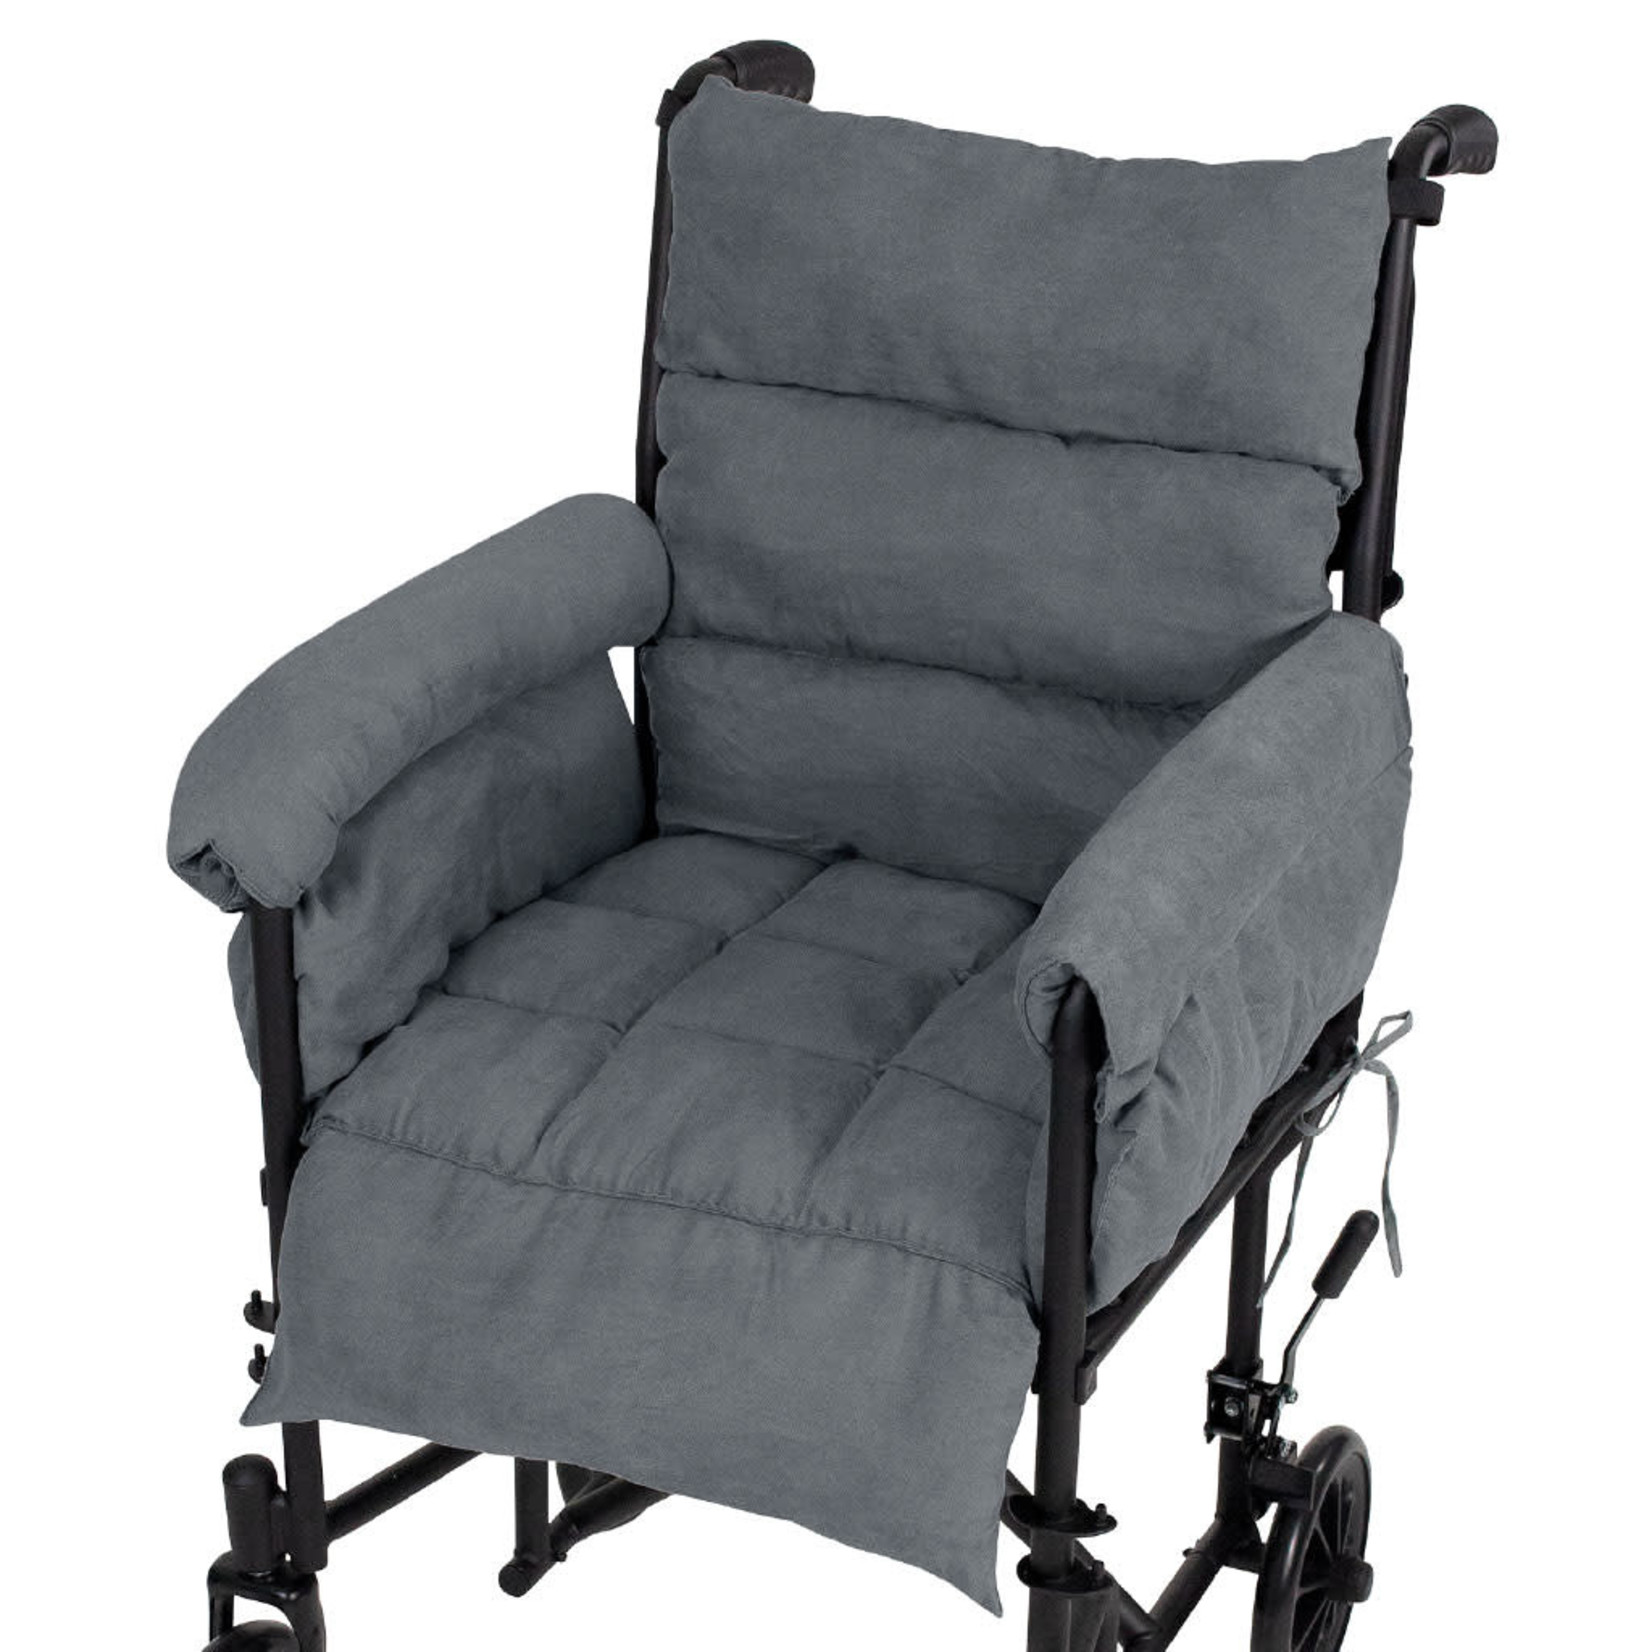 https://cdn.shoplightspeed.com/shops/648439/files/52357192/1652x1652x2/vive-health-full-wheelchair-cushion.jpg